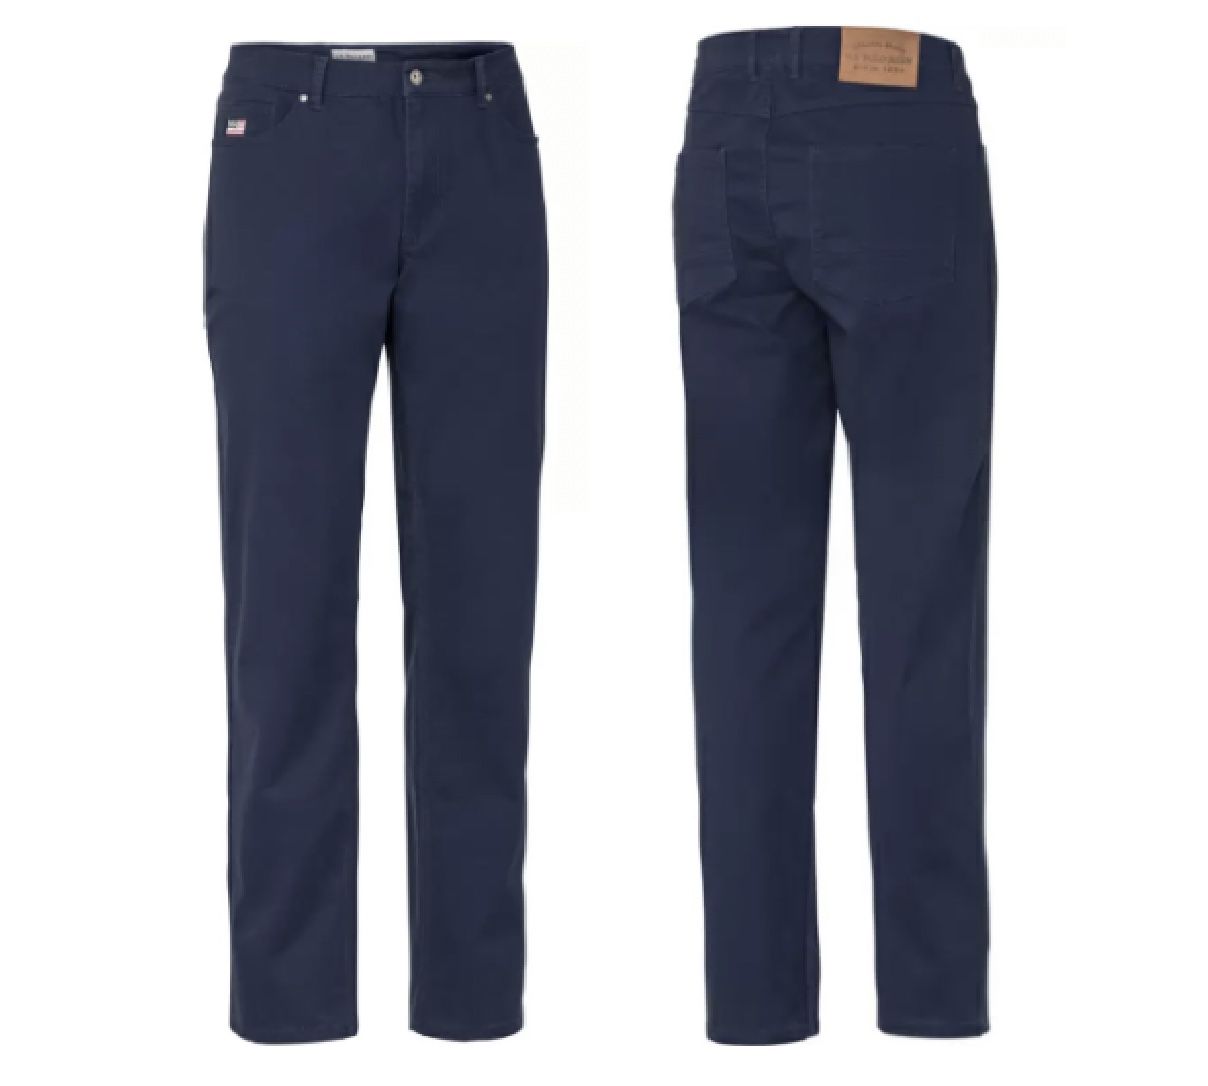 U.S. POLO ASSN. Herren Stretch Jeans in 3 Farben für je 26€ (statt 40€)